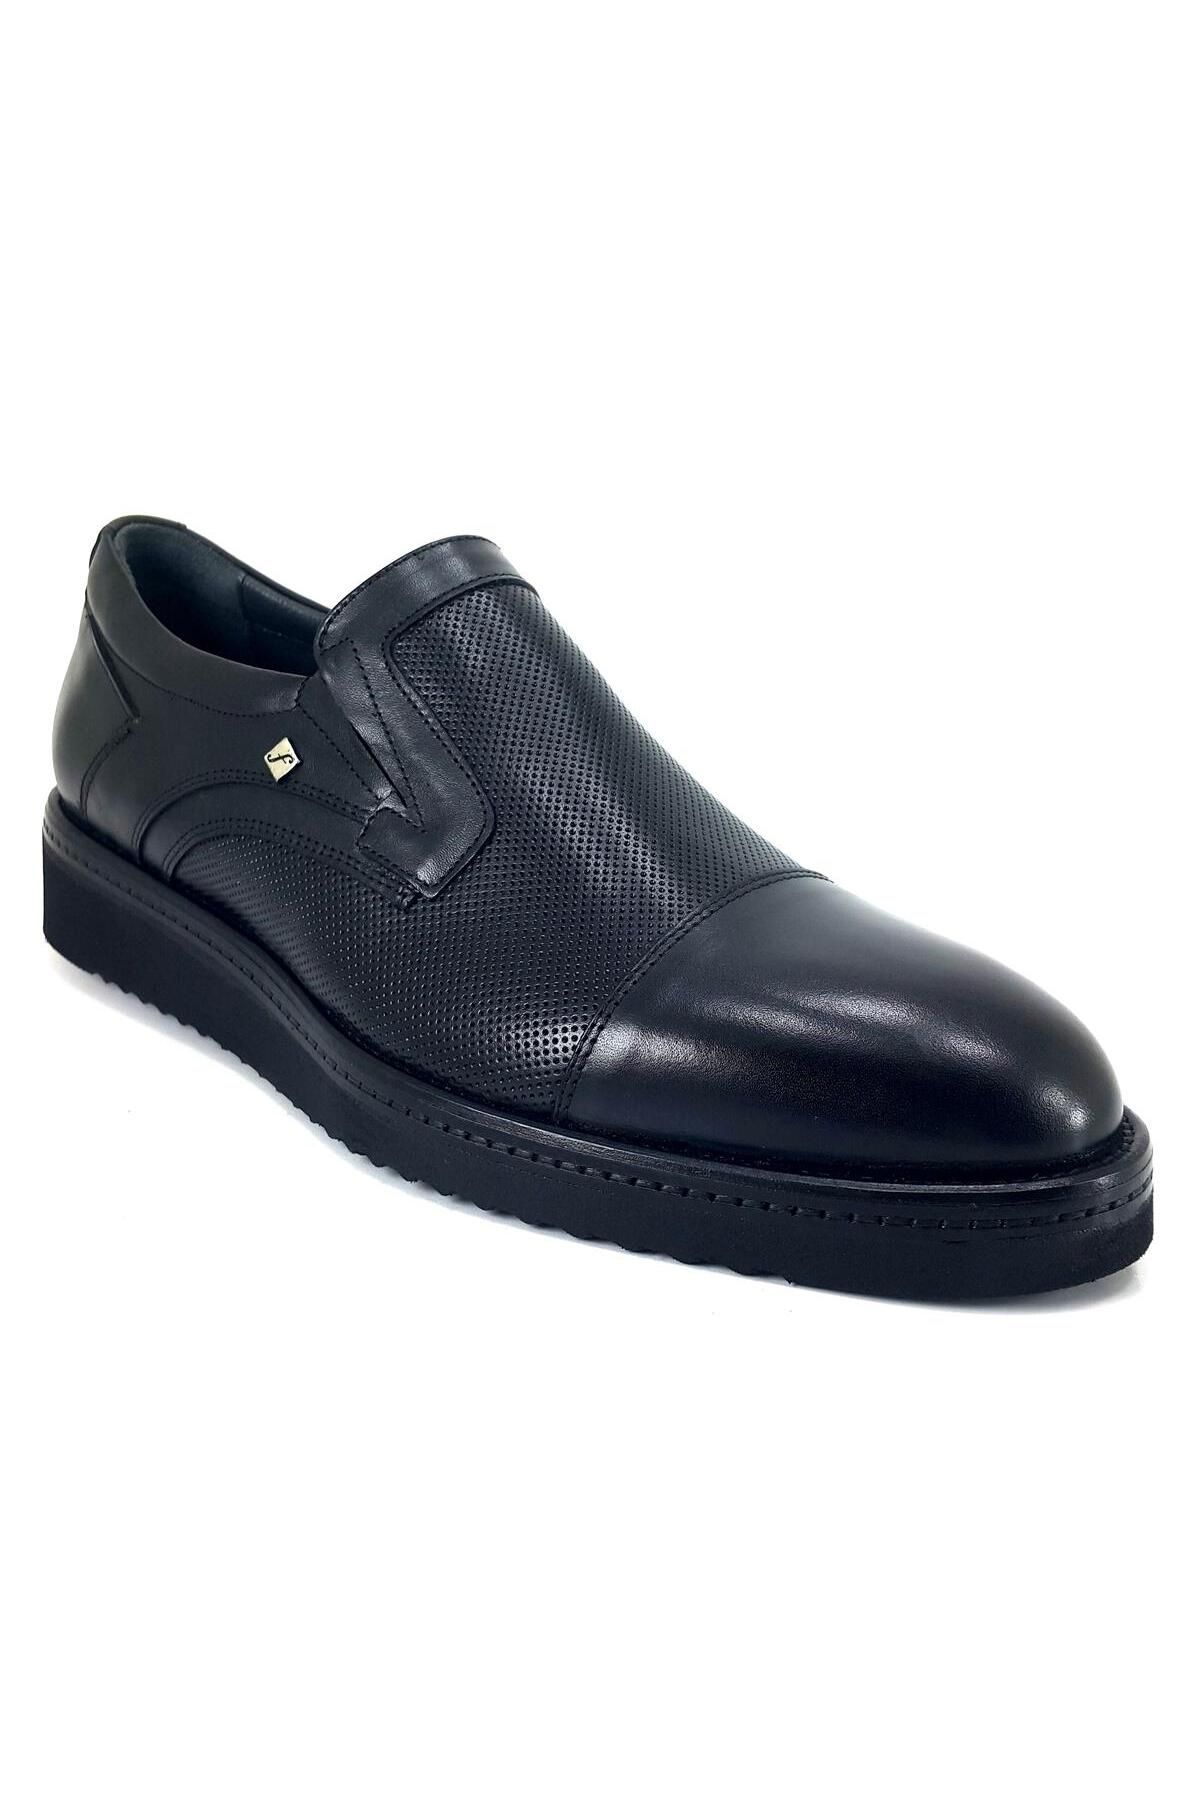 Fosco 2992 Erkek Günlük Ayakkabı - Siyah